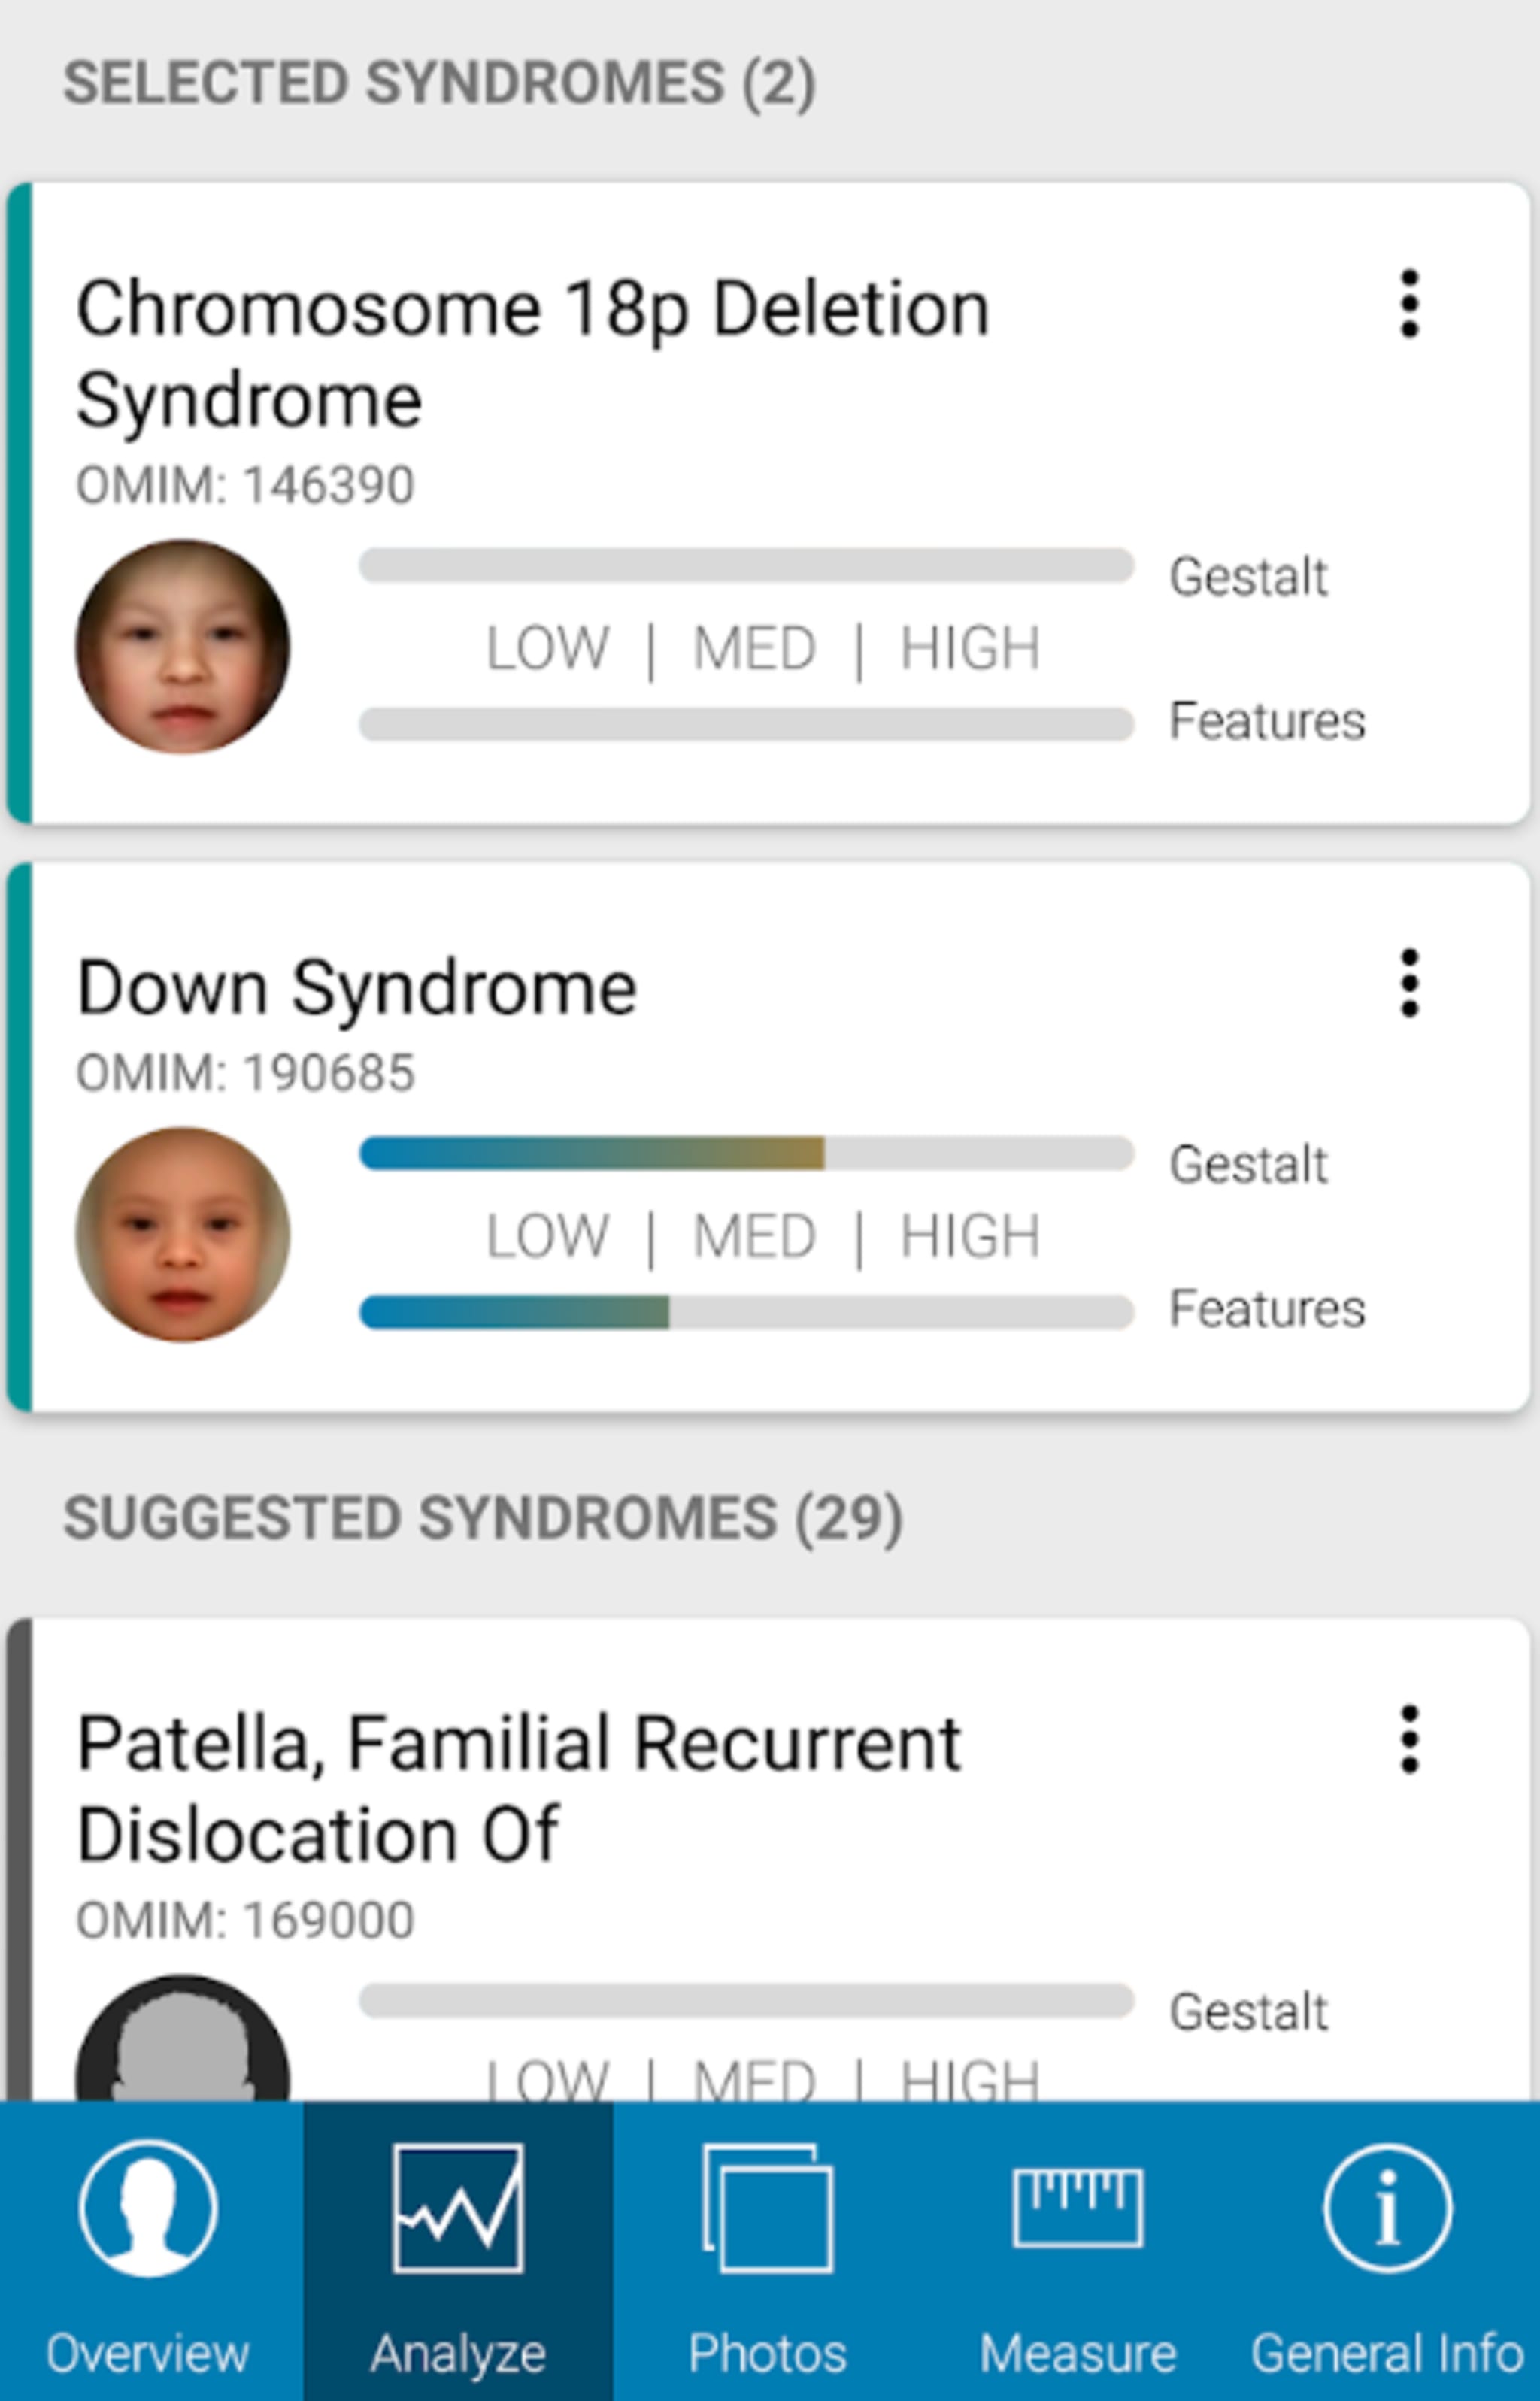 In der Analyse zeigt die App in einer Rangliste die Erbkrankheiten an, die am wahrscheinlichsten vorliegen. In diesem Fall wurde das Down-Syndrom erkannt. 